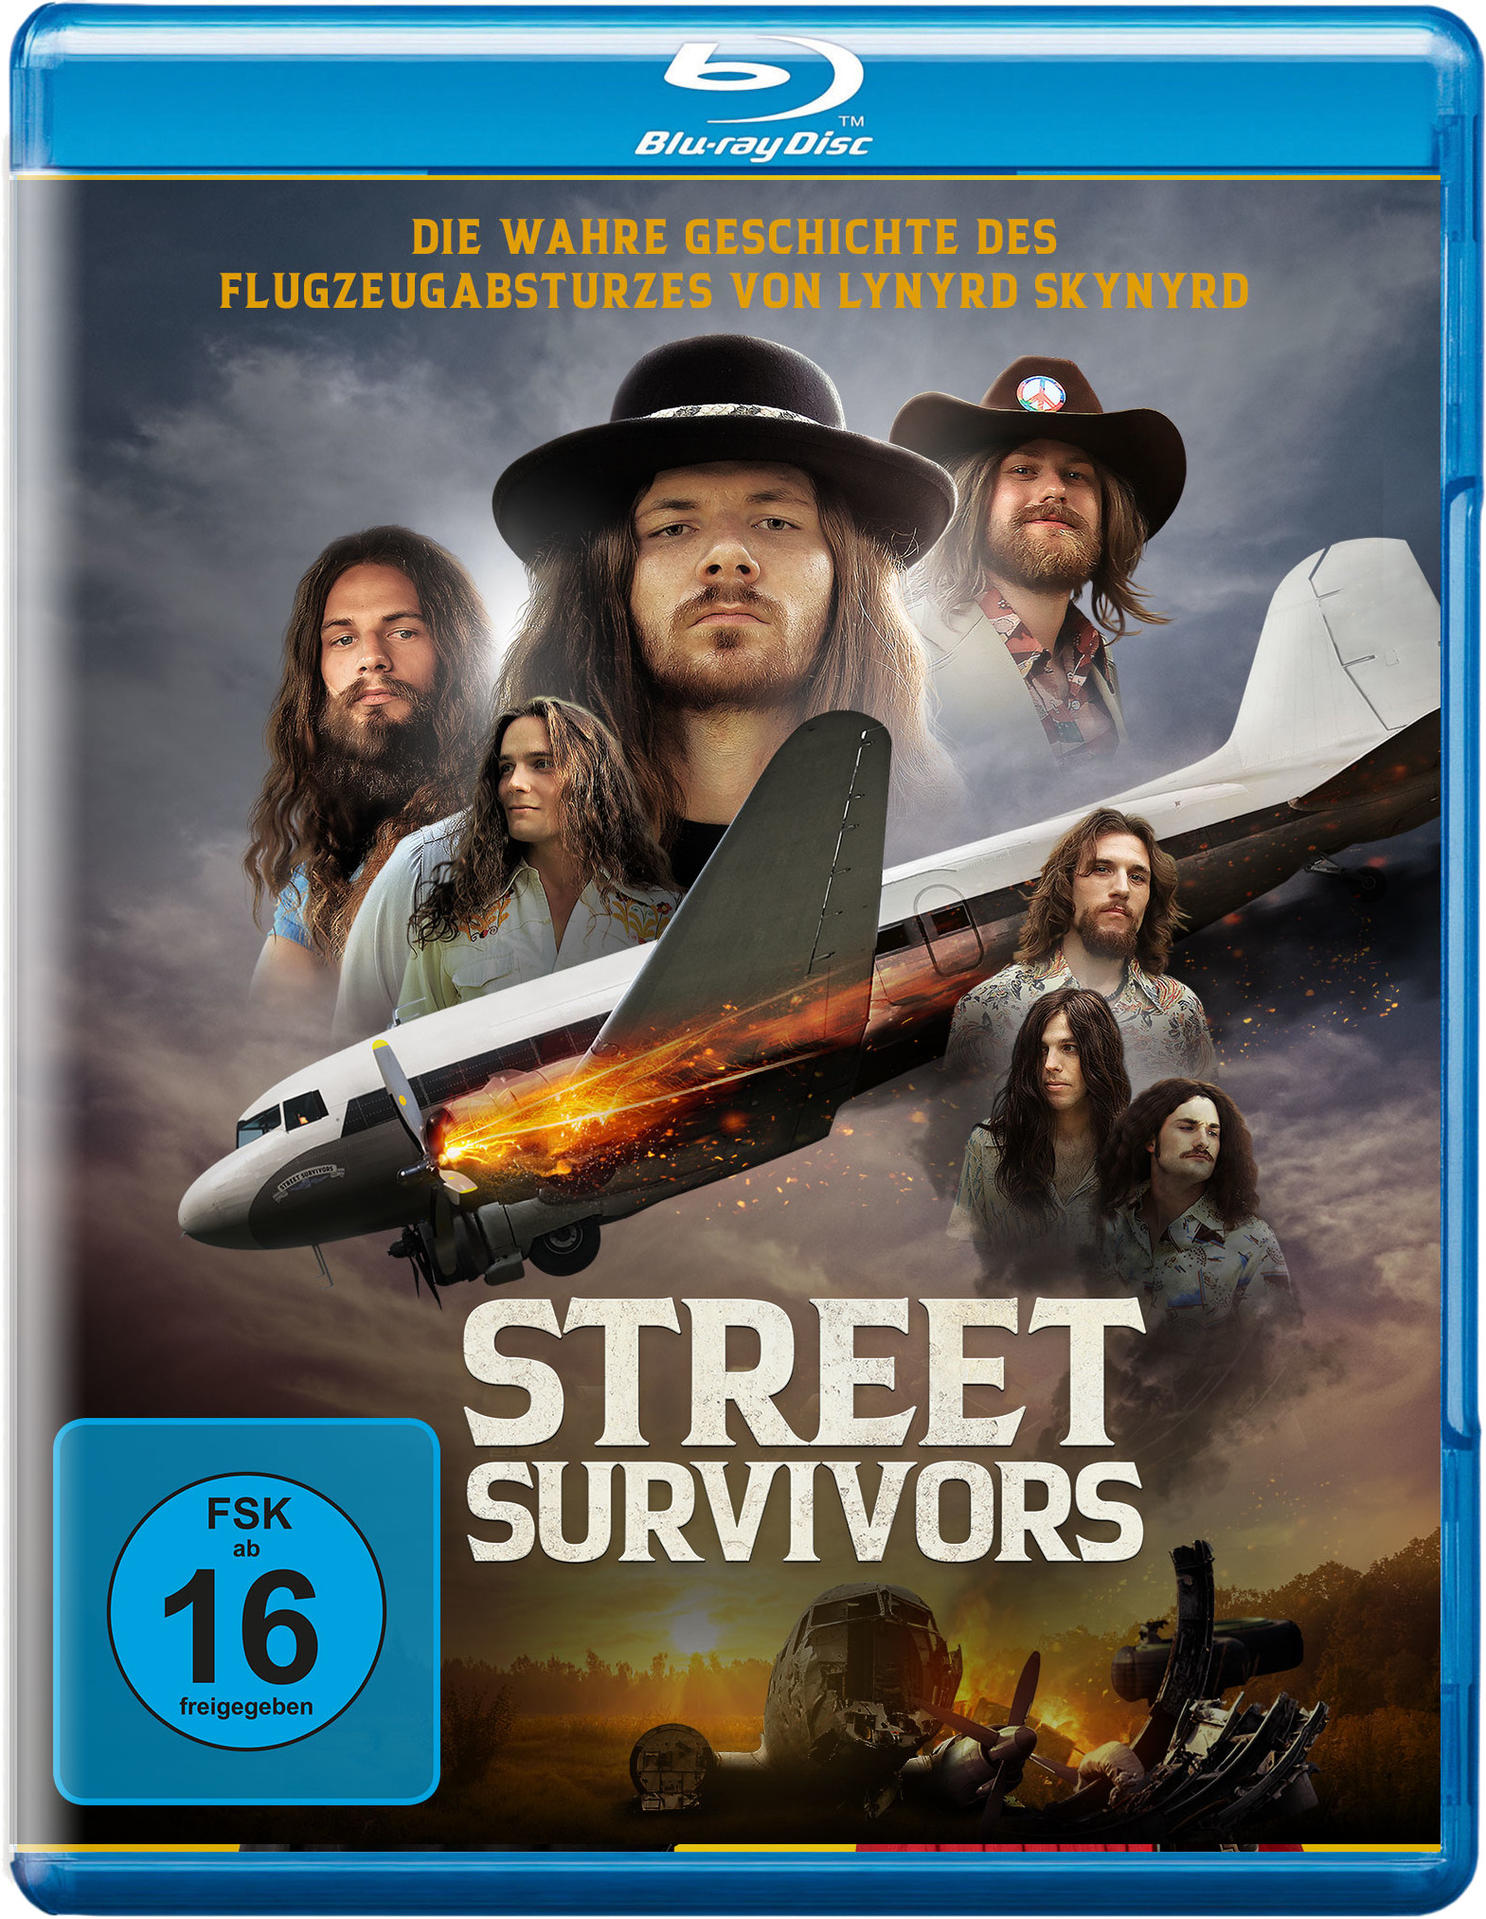 Street Survivors - Die wahre Flugzeugabsturzes Lynyrd Blu-ray Skynyrd des Geschichte von